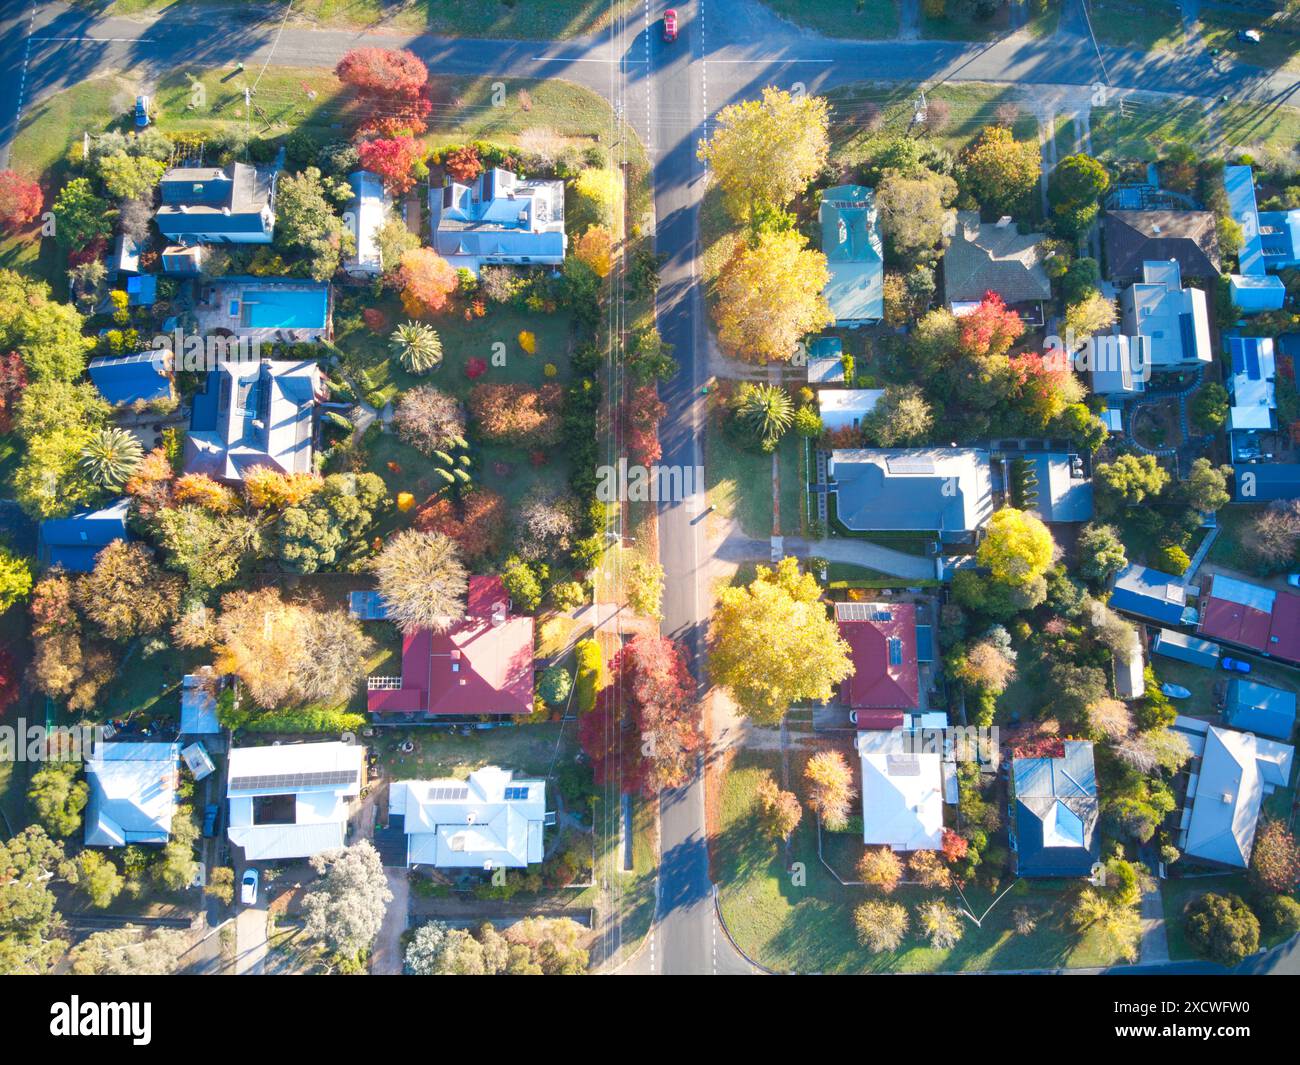 Vista aerea delle case sulla strada dall'alto colori vivaci, cortili, strade e alberi, piccola città australiana, Castlemaine, Victoria. Foto Stock